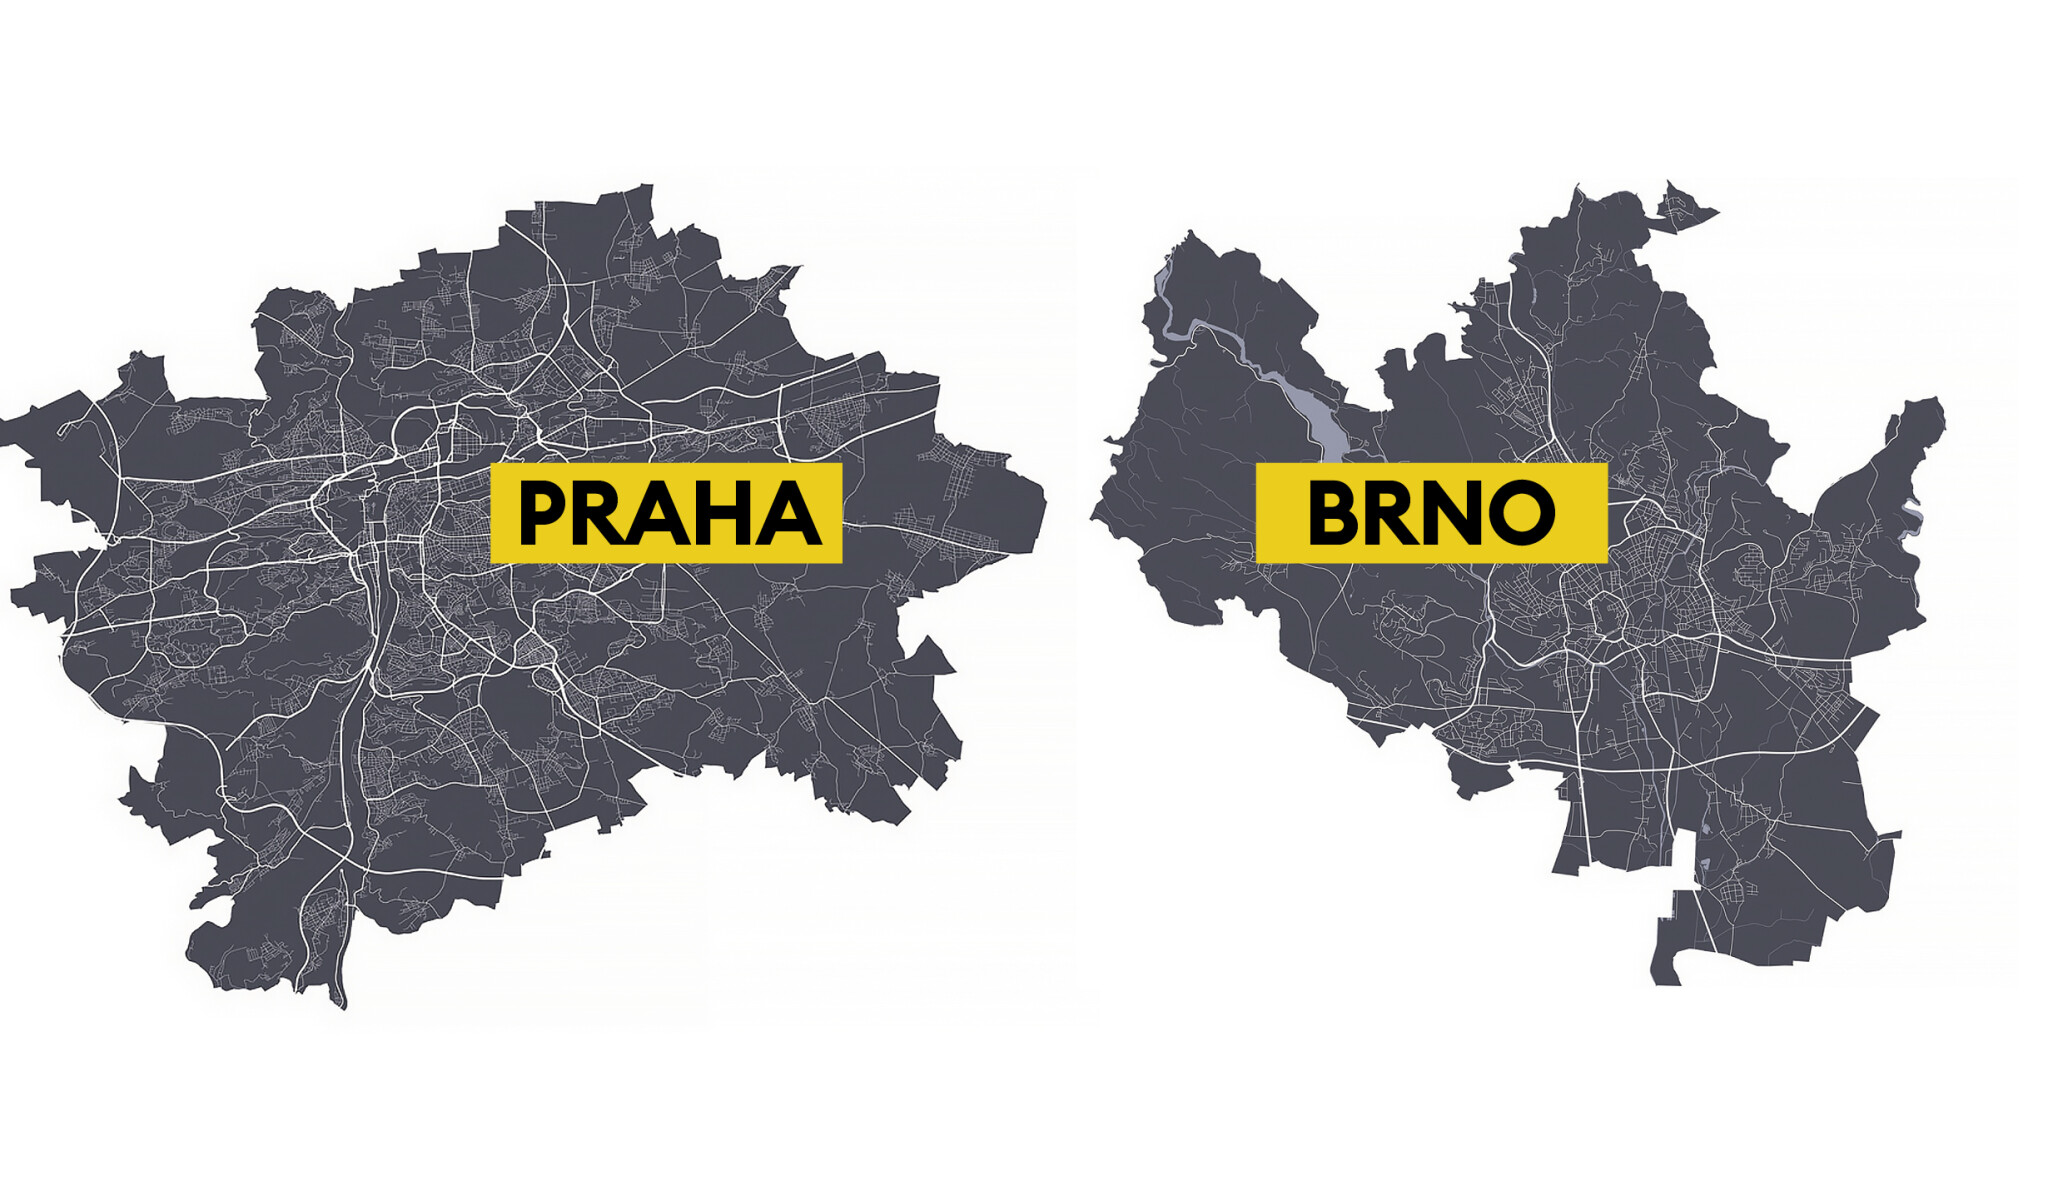 Heat mapa Prahy a Brna. Kde očekávat největší stavební a ekonomický rozvoj?